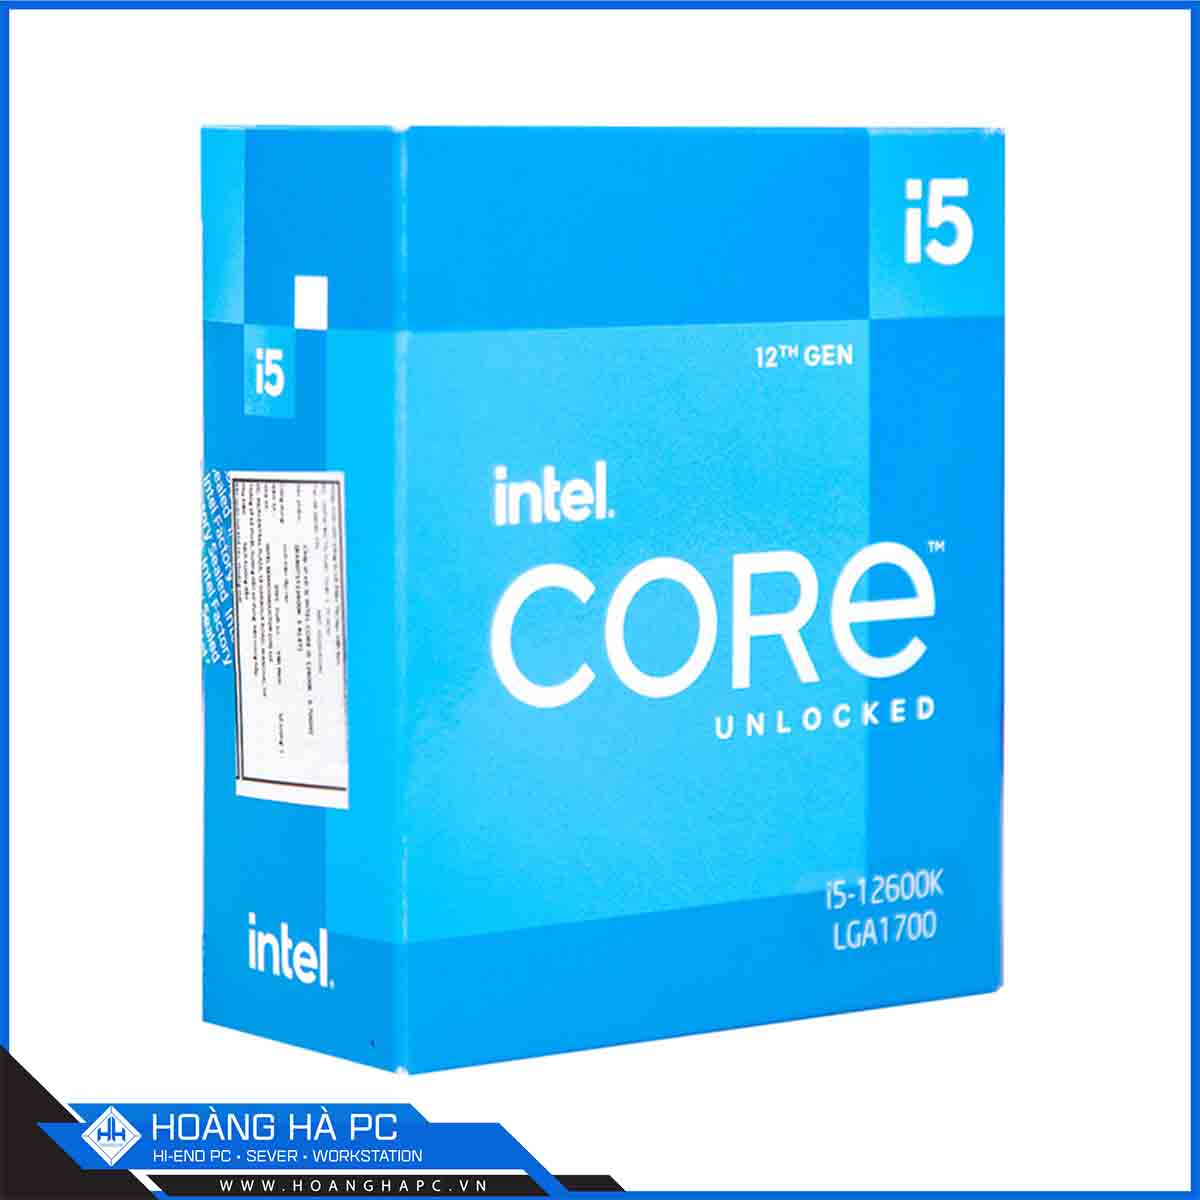 CPU Intel Core i5-12600K